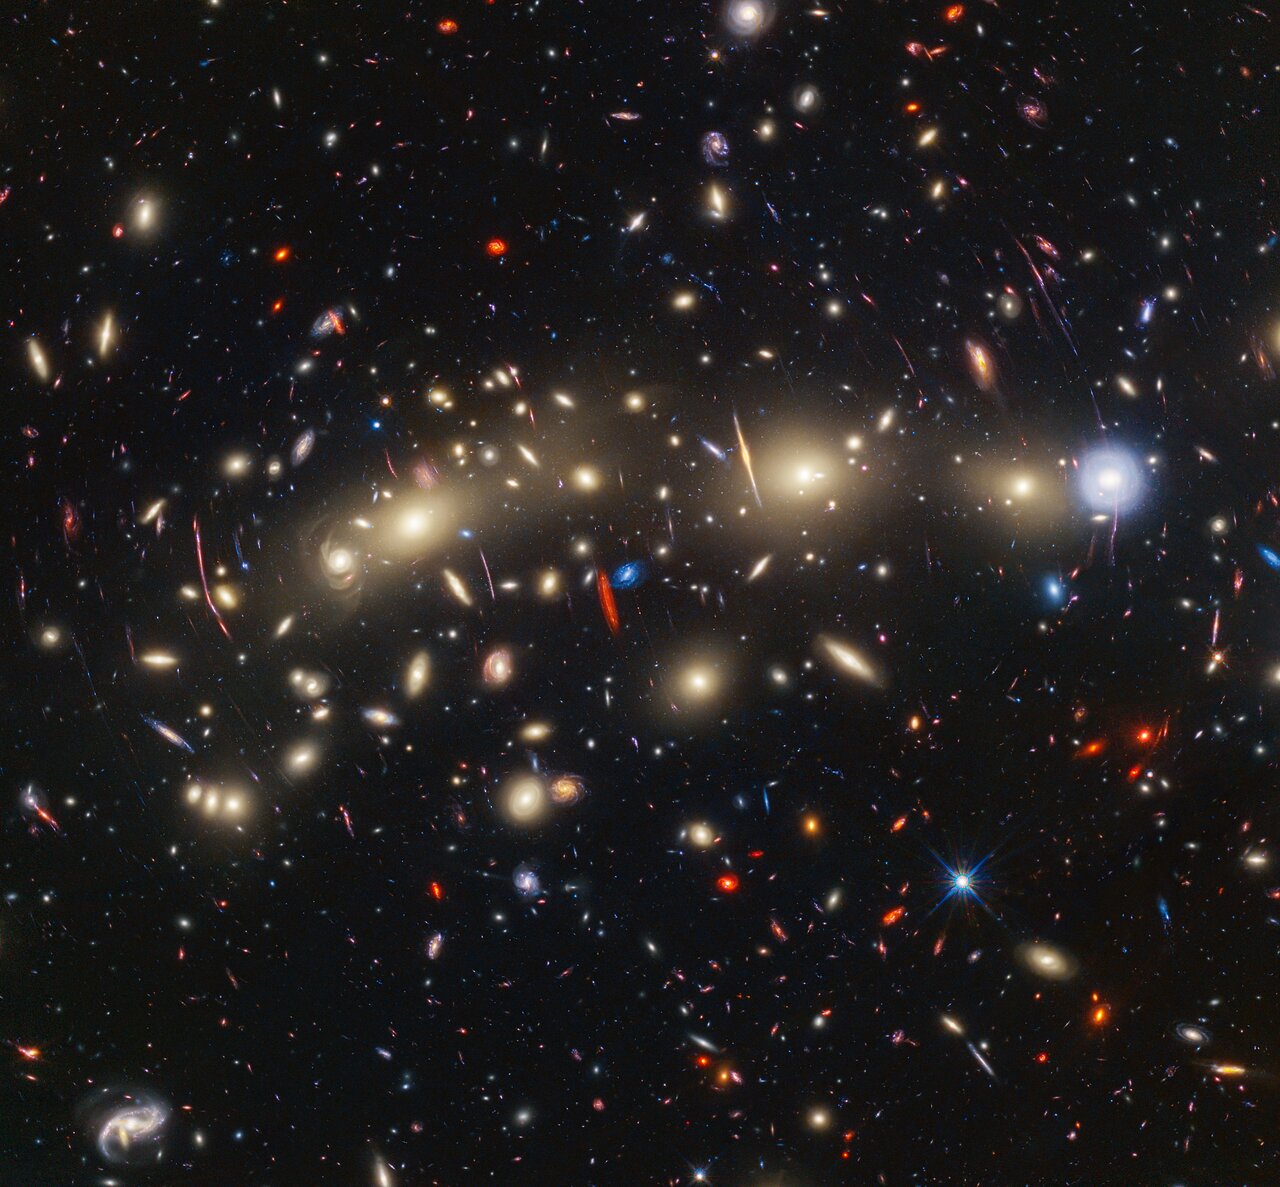 Webb en Hubble hebben een zeer kleurrijke foto gemaakt van cluster MACS0416